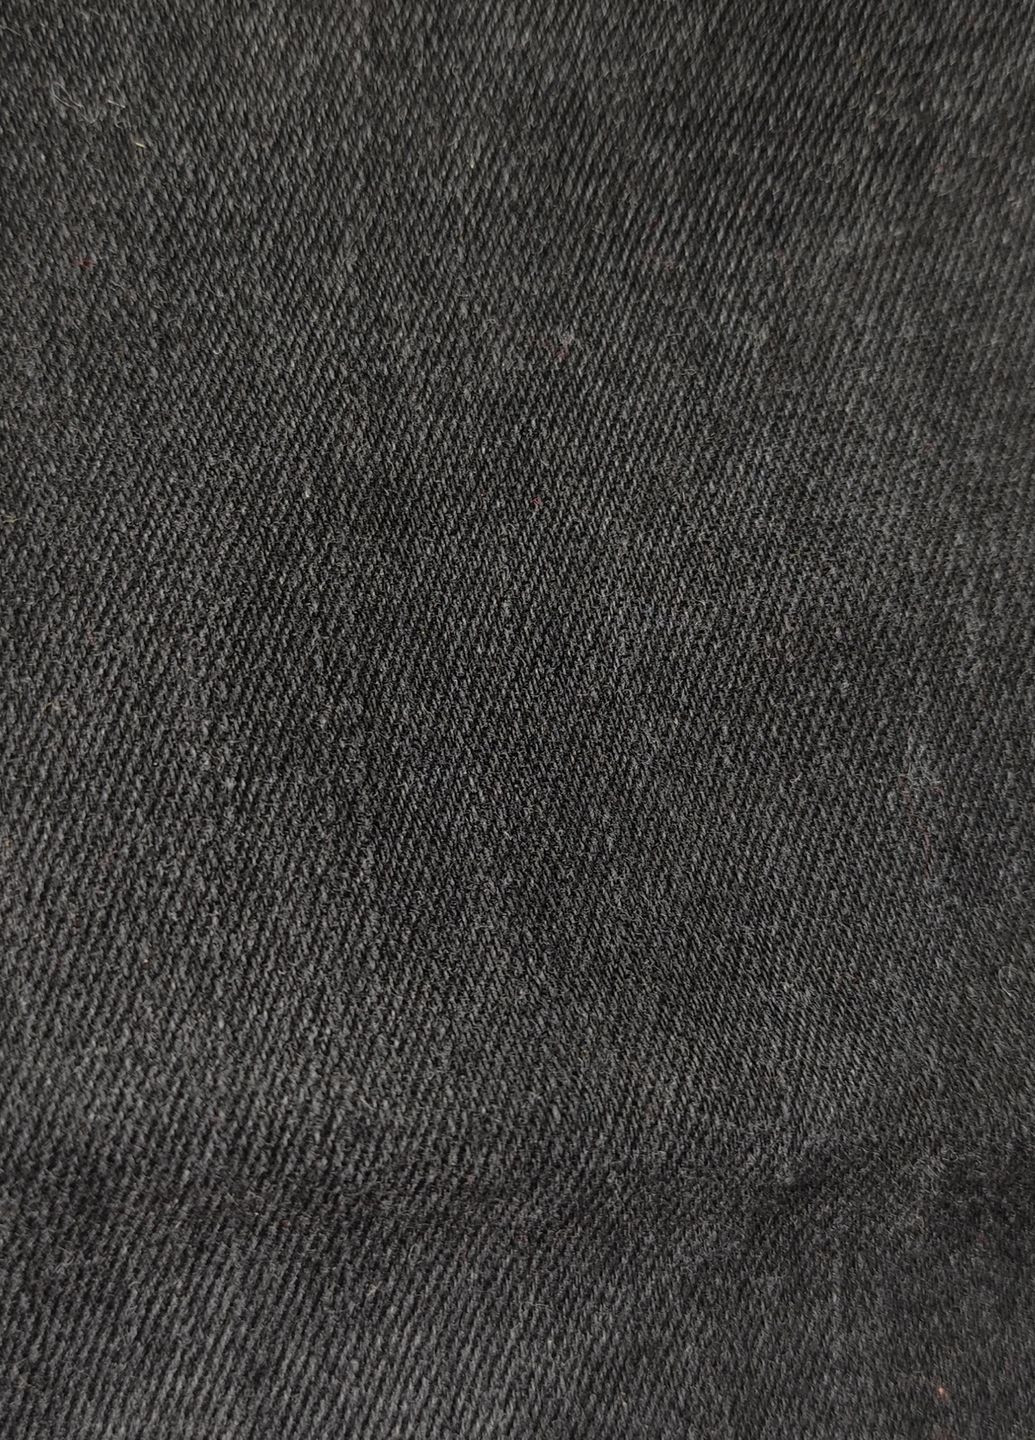 Черные джинсы H&M